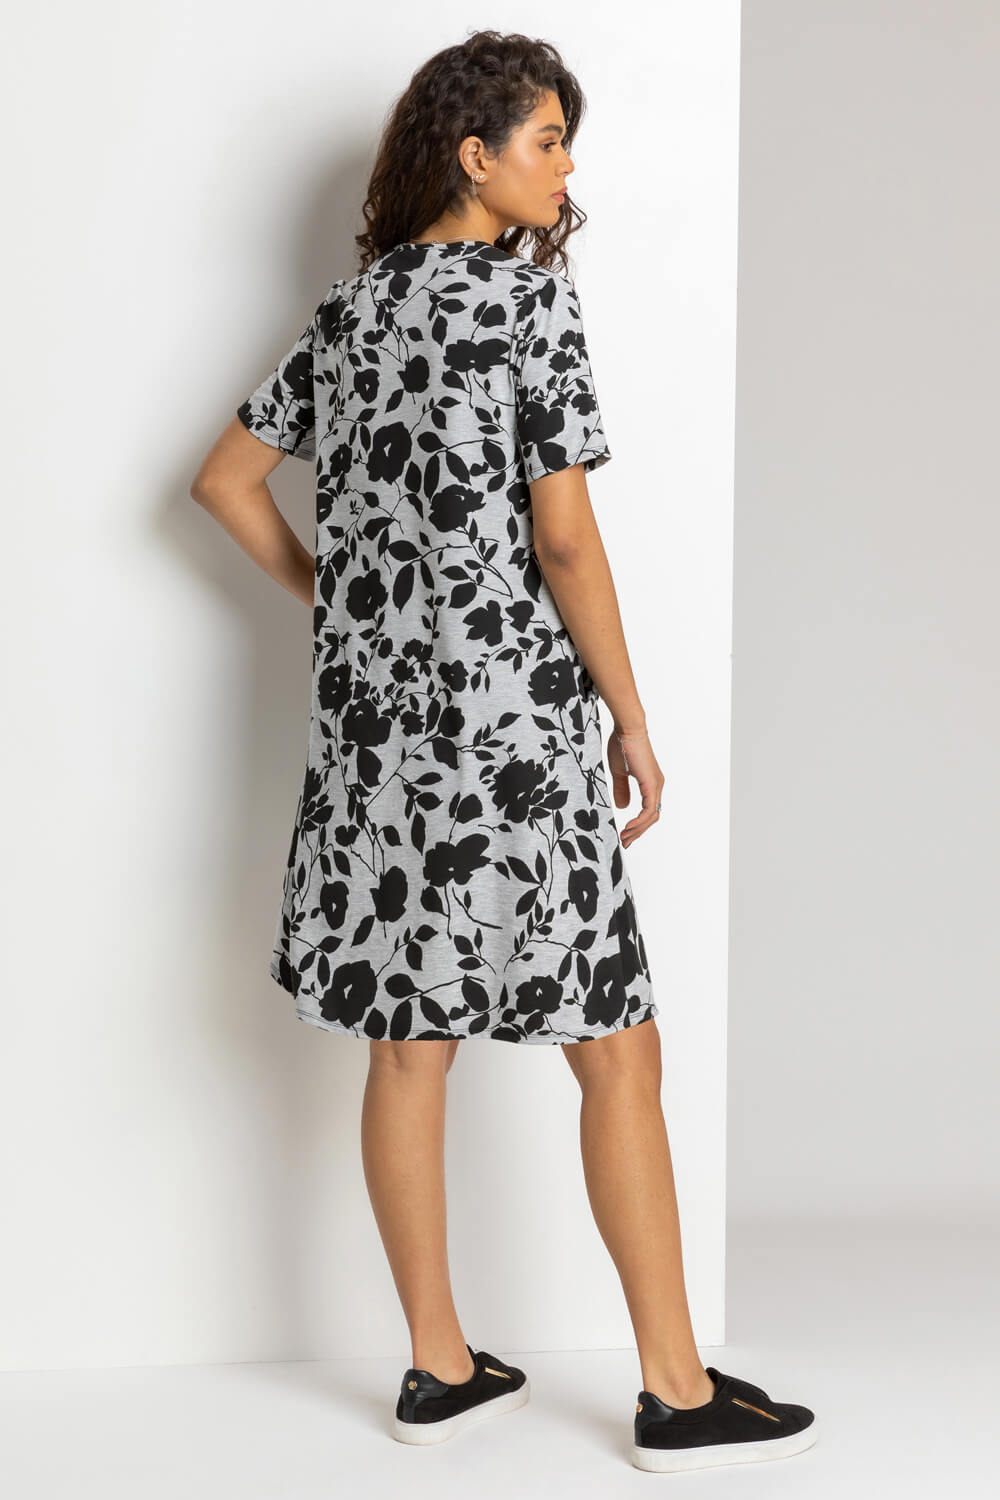 Grey Floral Print Pocket Shift Dress, Image 2 of 4